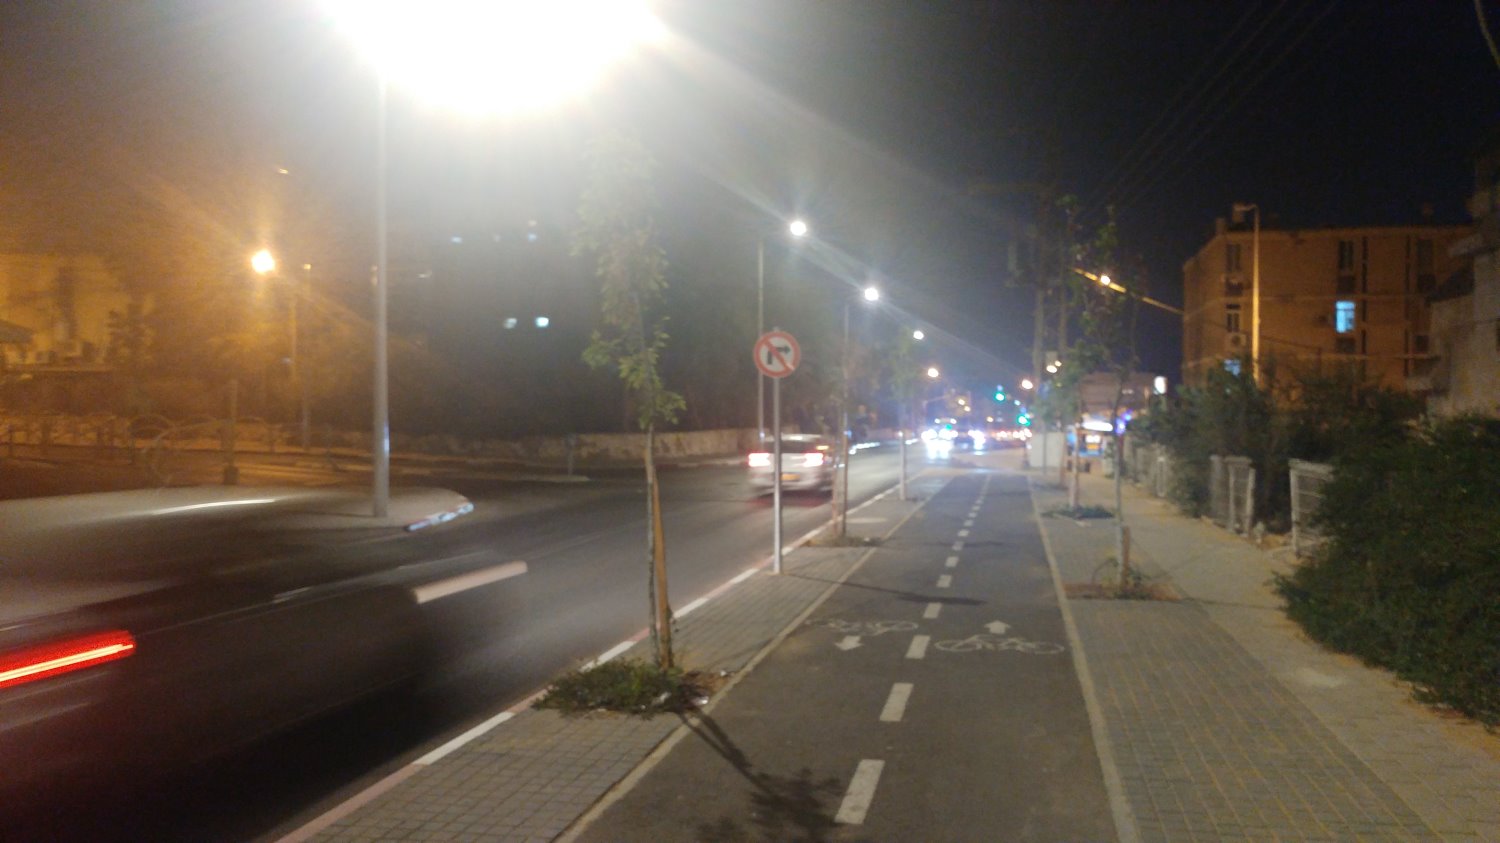 יותר שבילי אופניים בעיר באר שבע. צילום: שרון טל